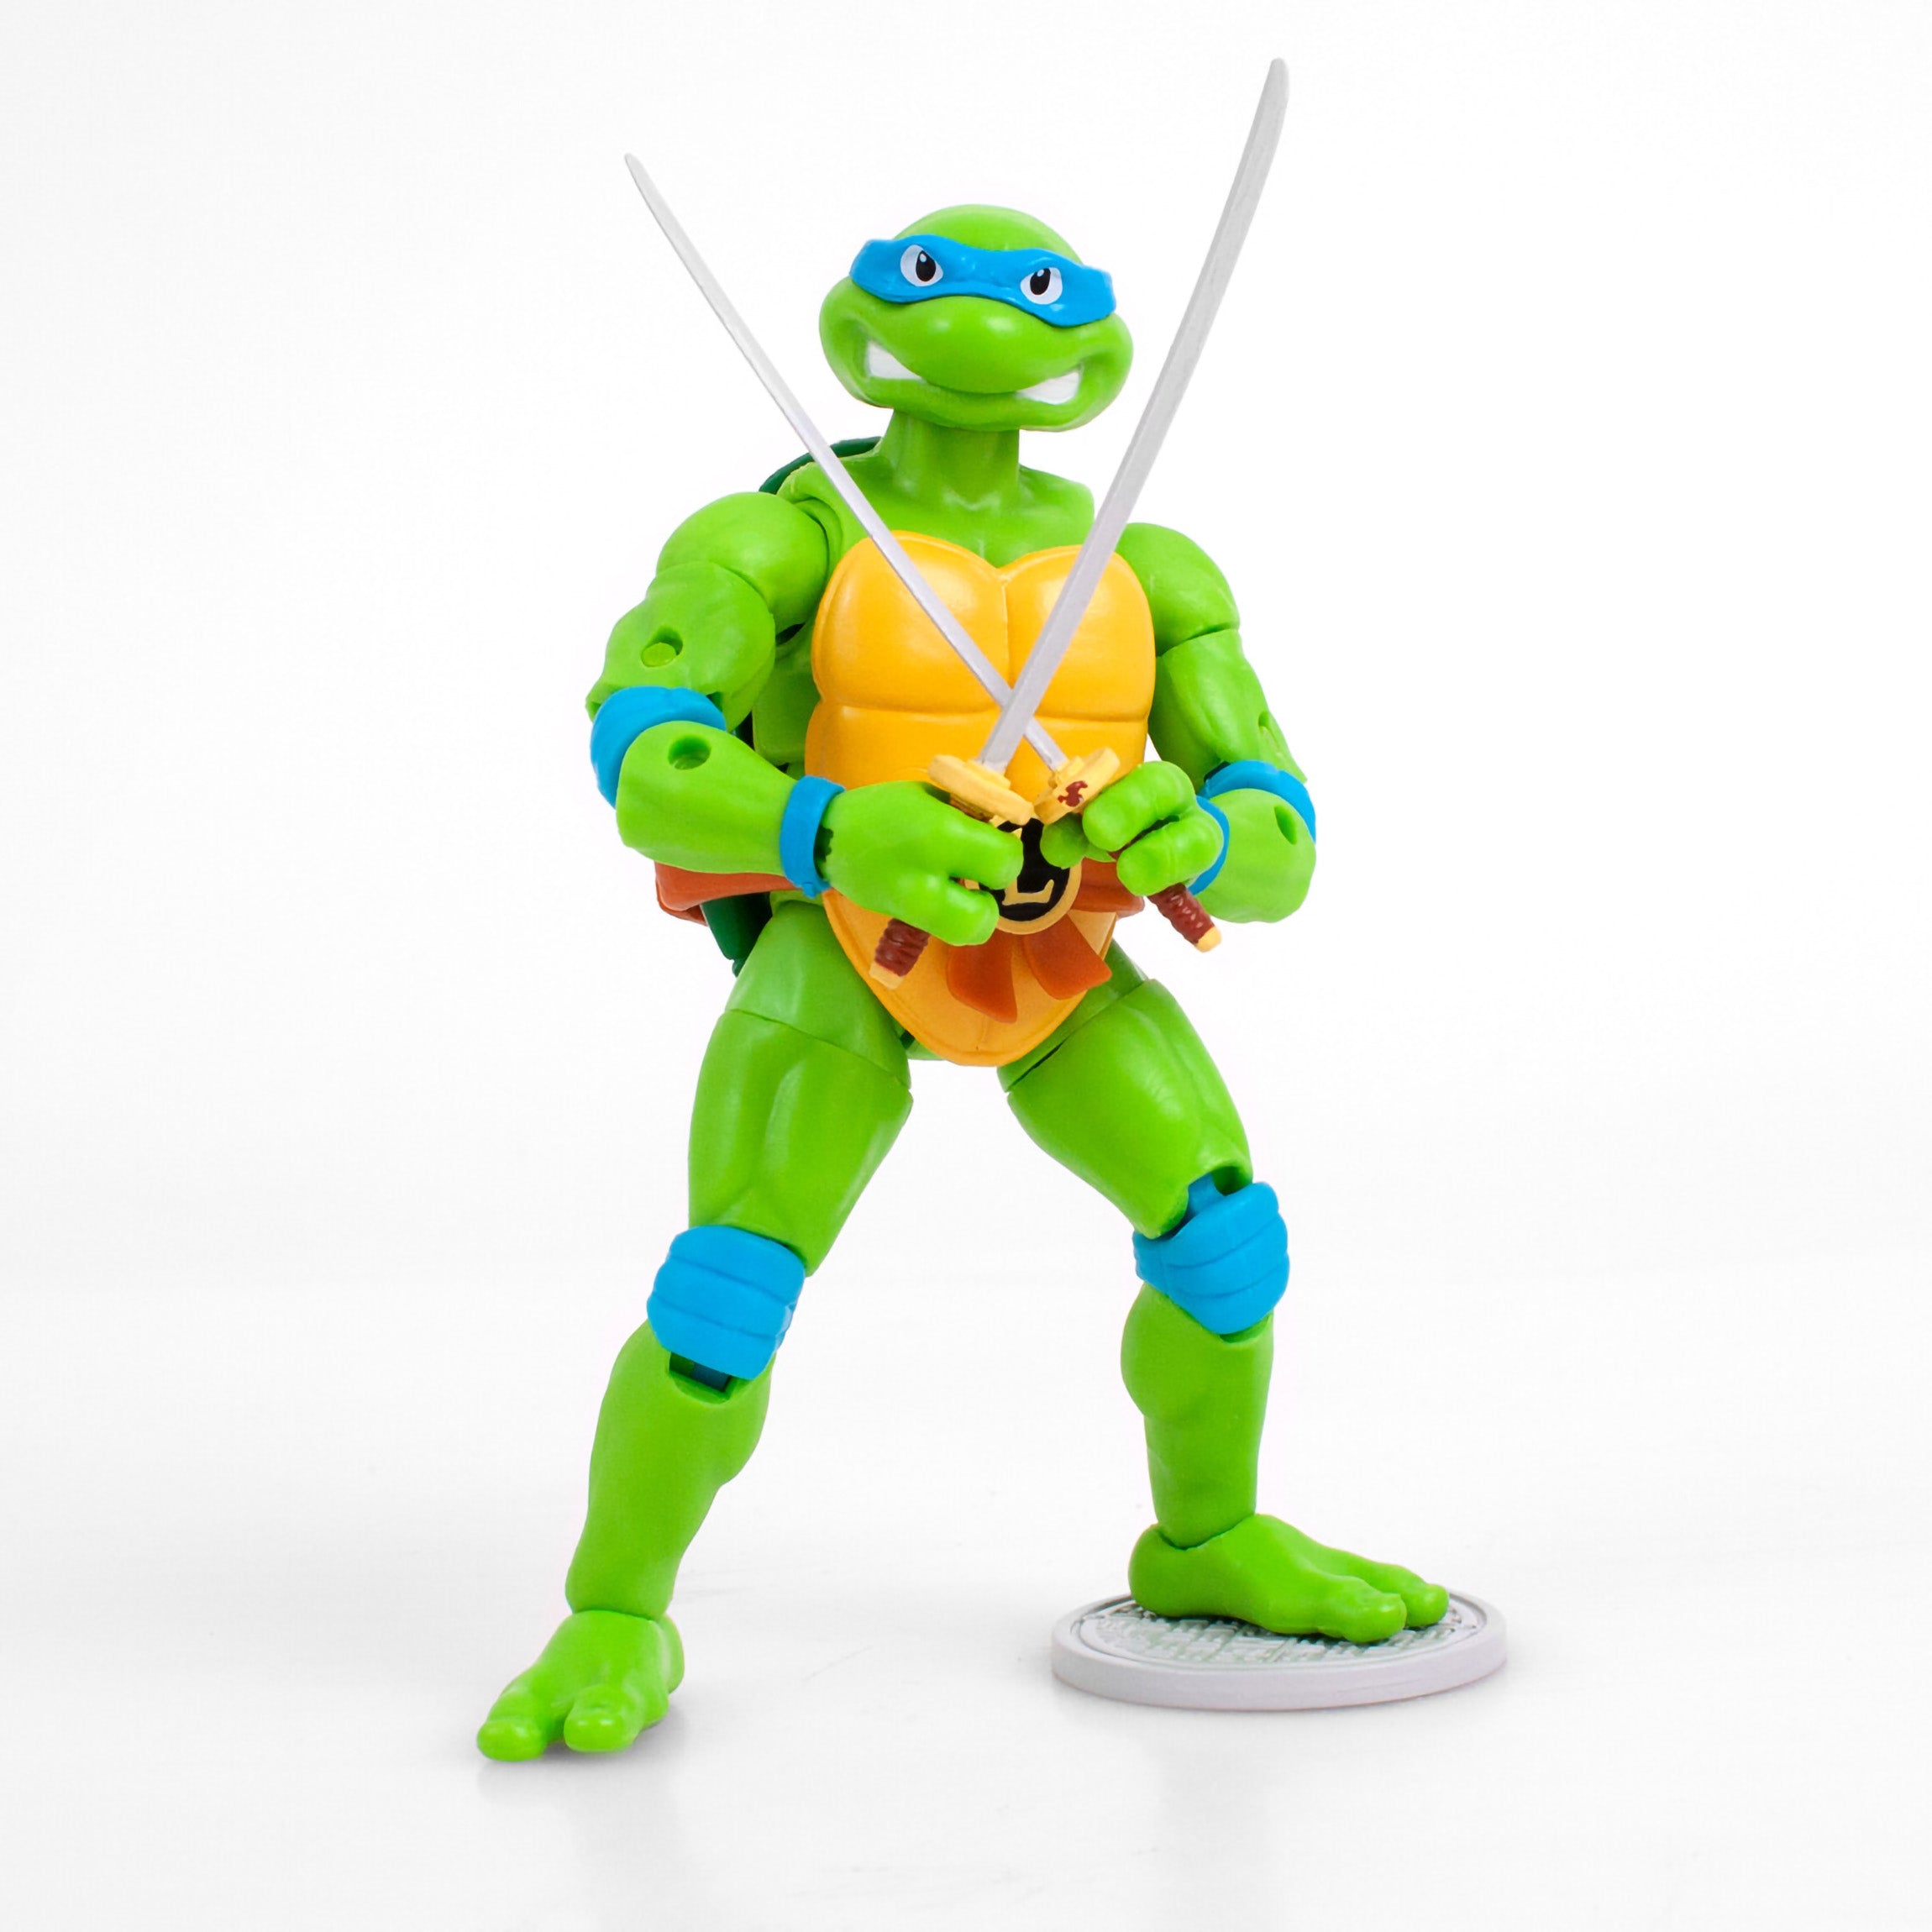 Teenage Mutant Ninja Turtles Movie Roleplay and Figure